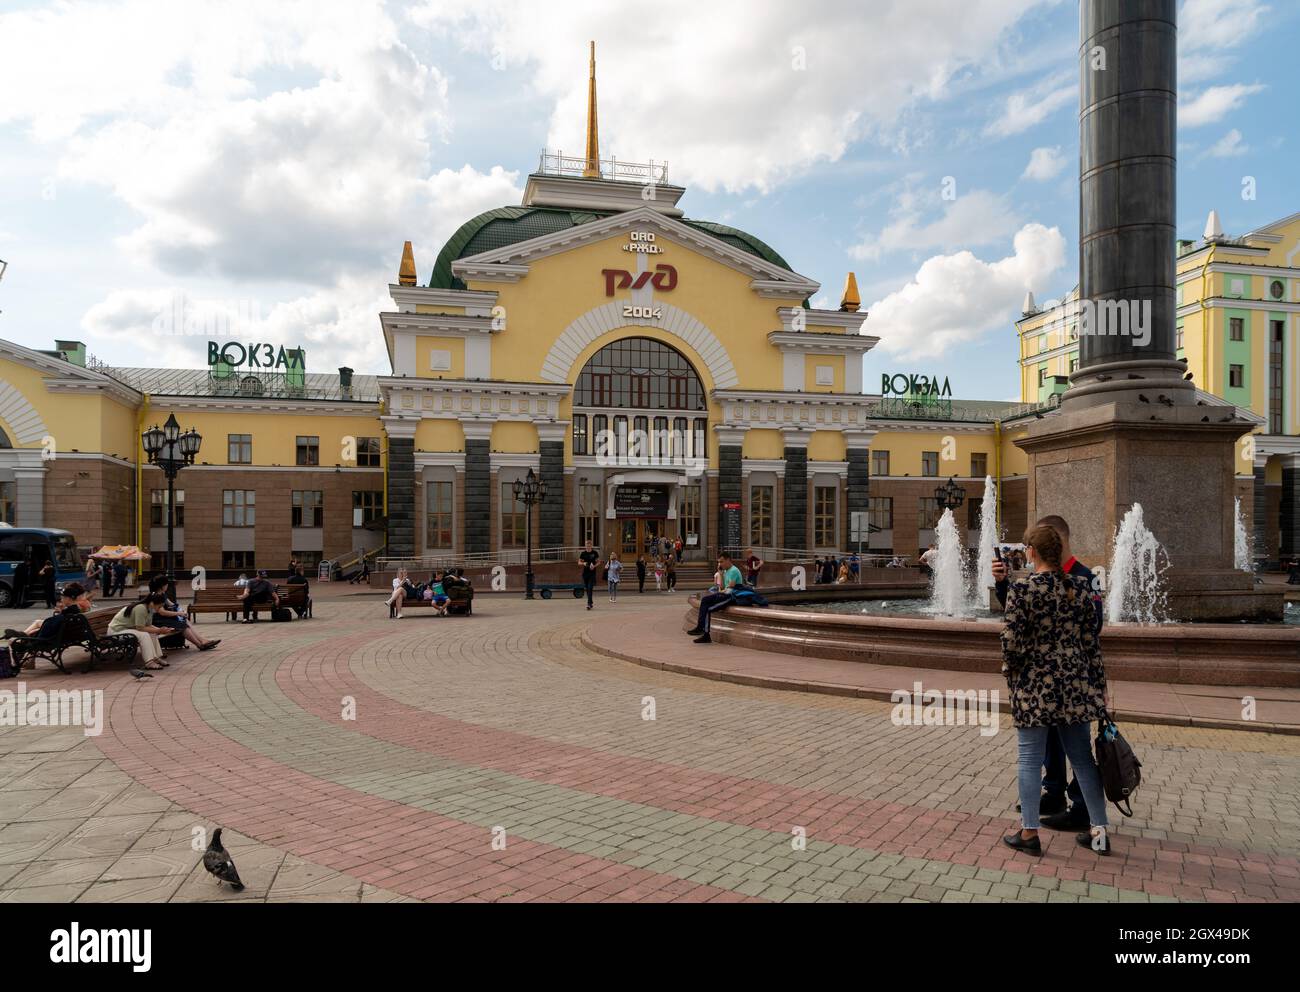 La gente riposa alla fontana sulla Piazza della Stazione ferroviaria di fronte alla stazione ferroviaria principale con il logo delle Ferrovie russe in russo sulla facciata Foto Stock